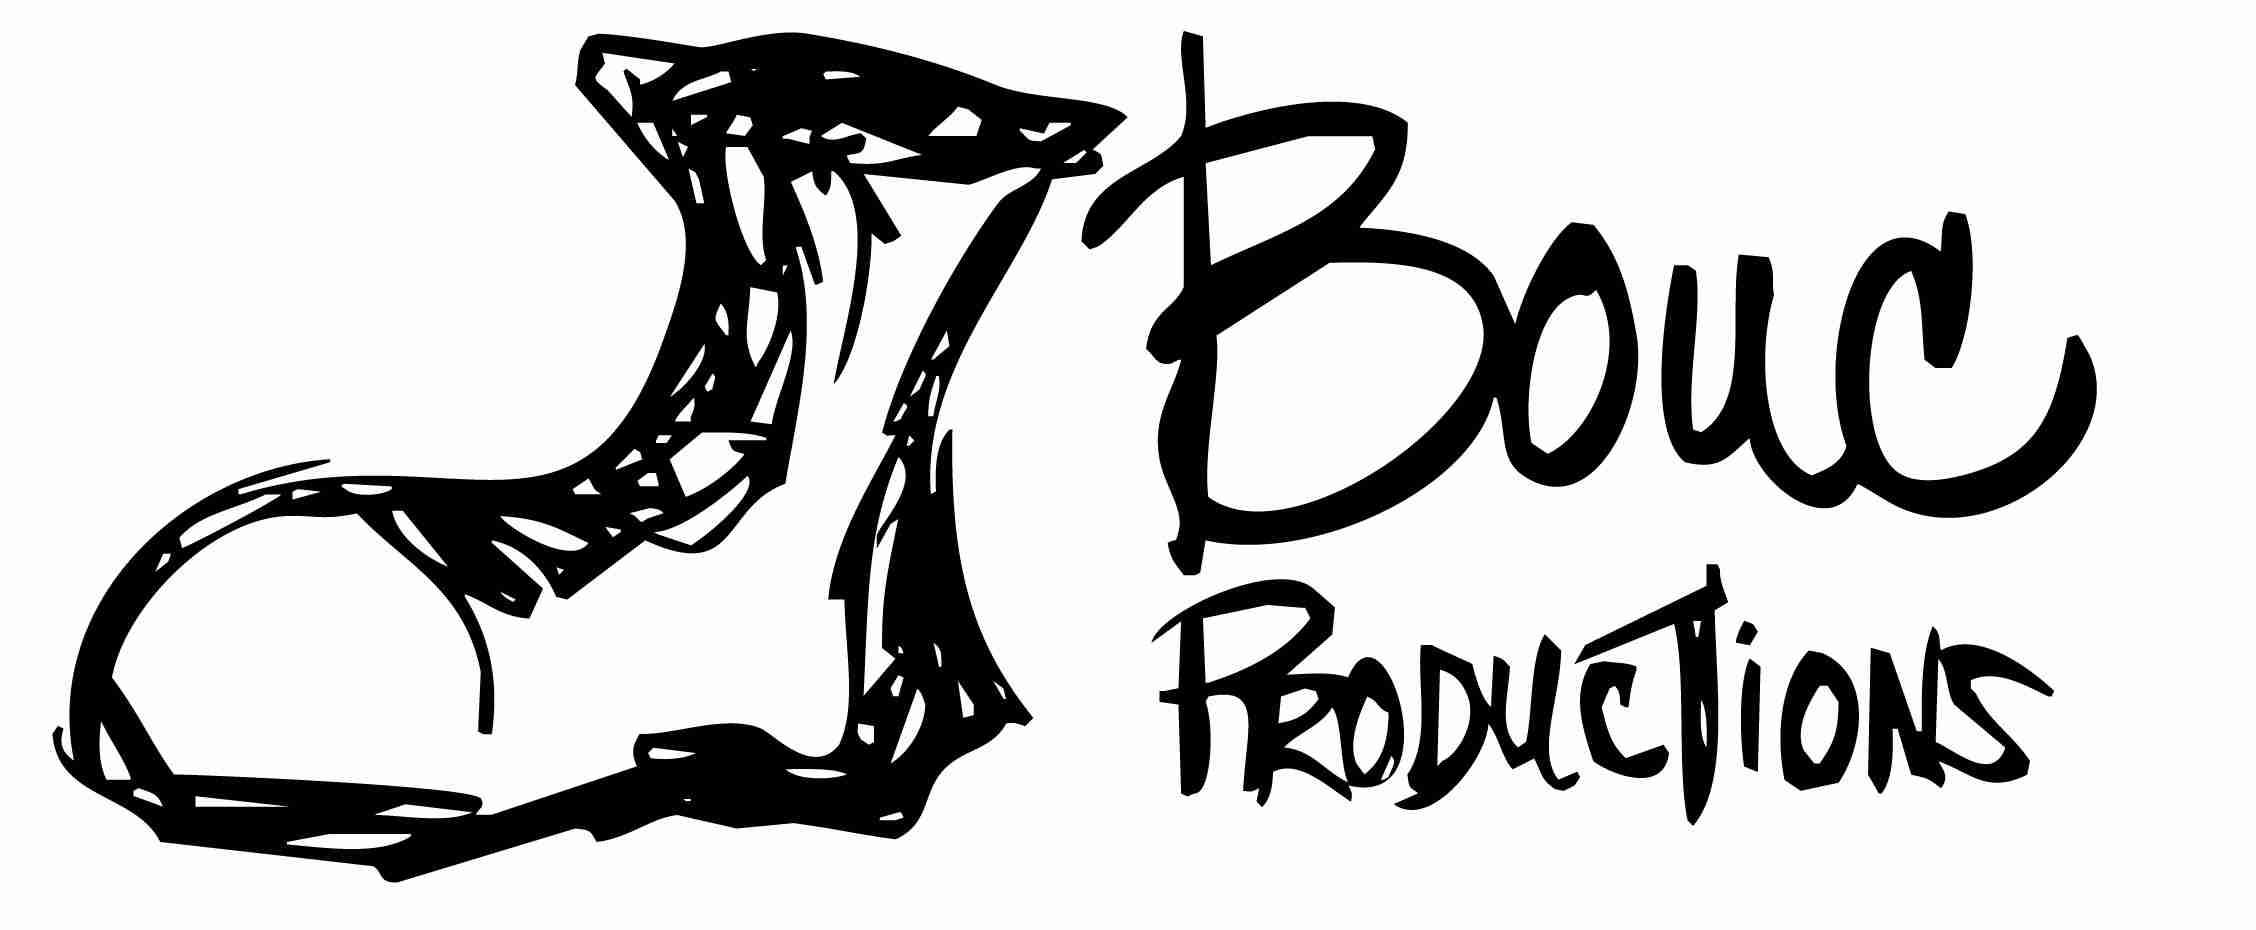 Botte Productions/Bouc Productions